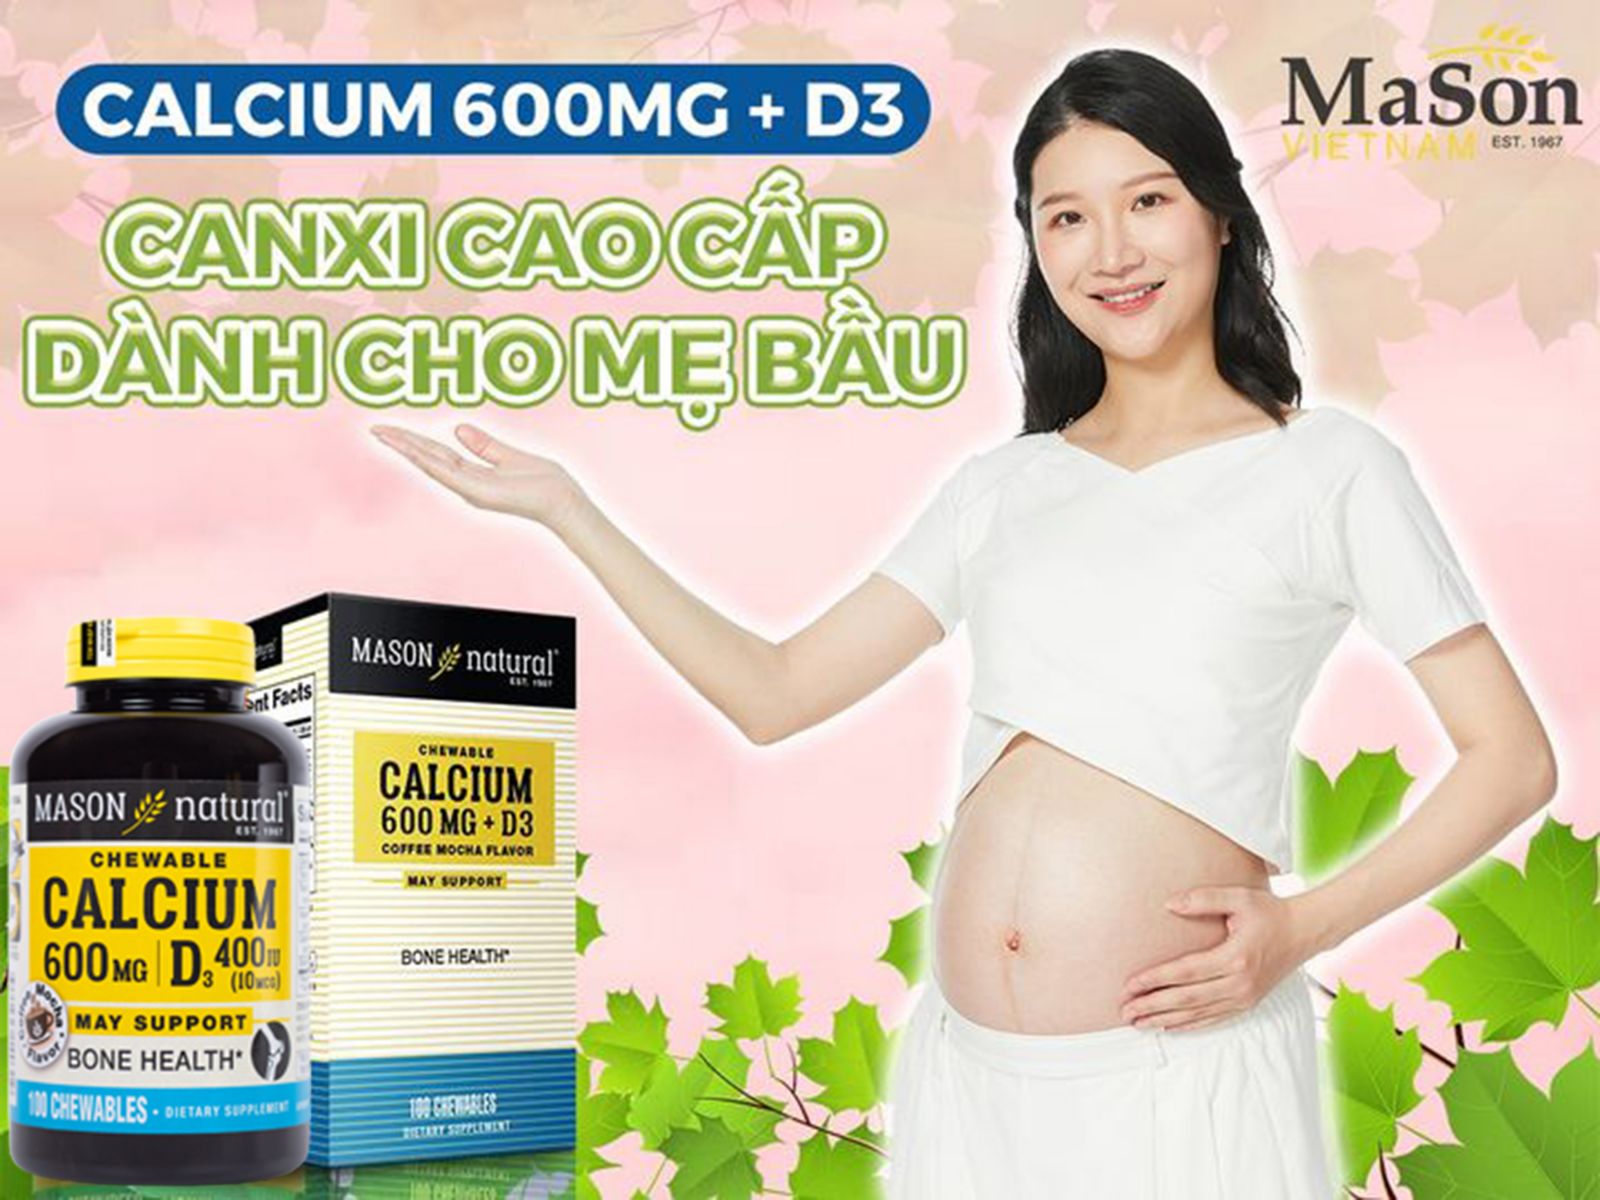 Calcium 600mg + D3 – Canxi nhai cao cấp dành cho mẹ bầu 3 tháng giữa